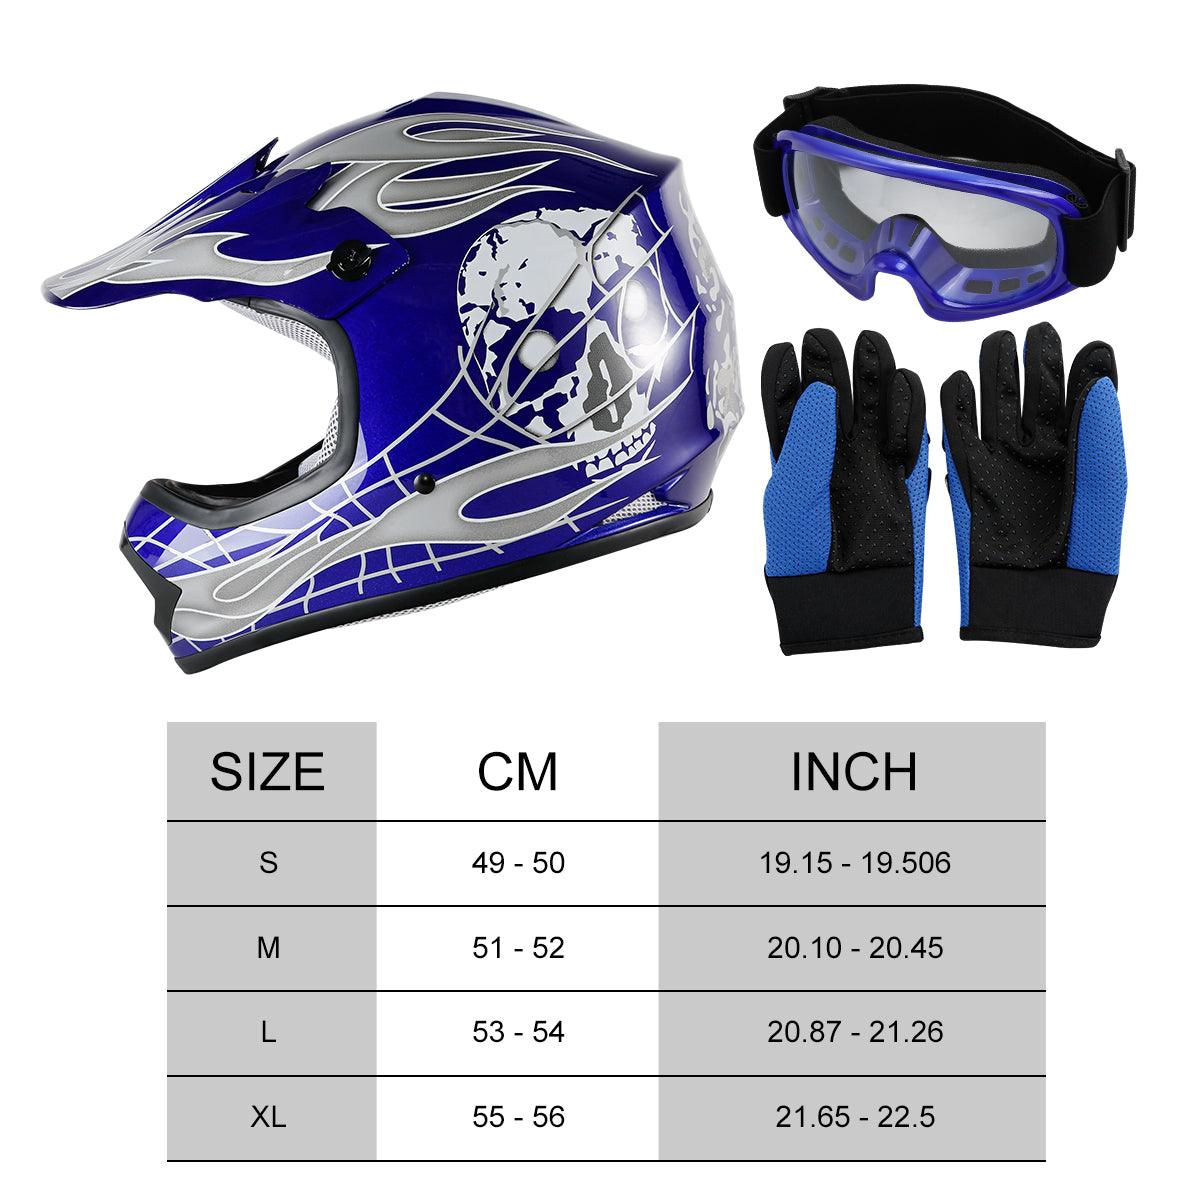 TCMT Blue Skull Youth Kids DOT Motocross Off-Road Helmet